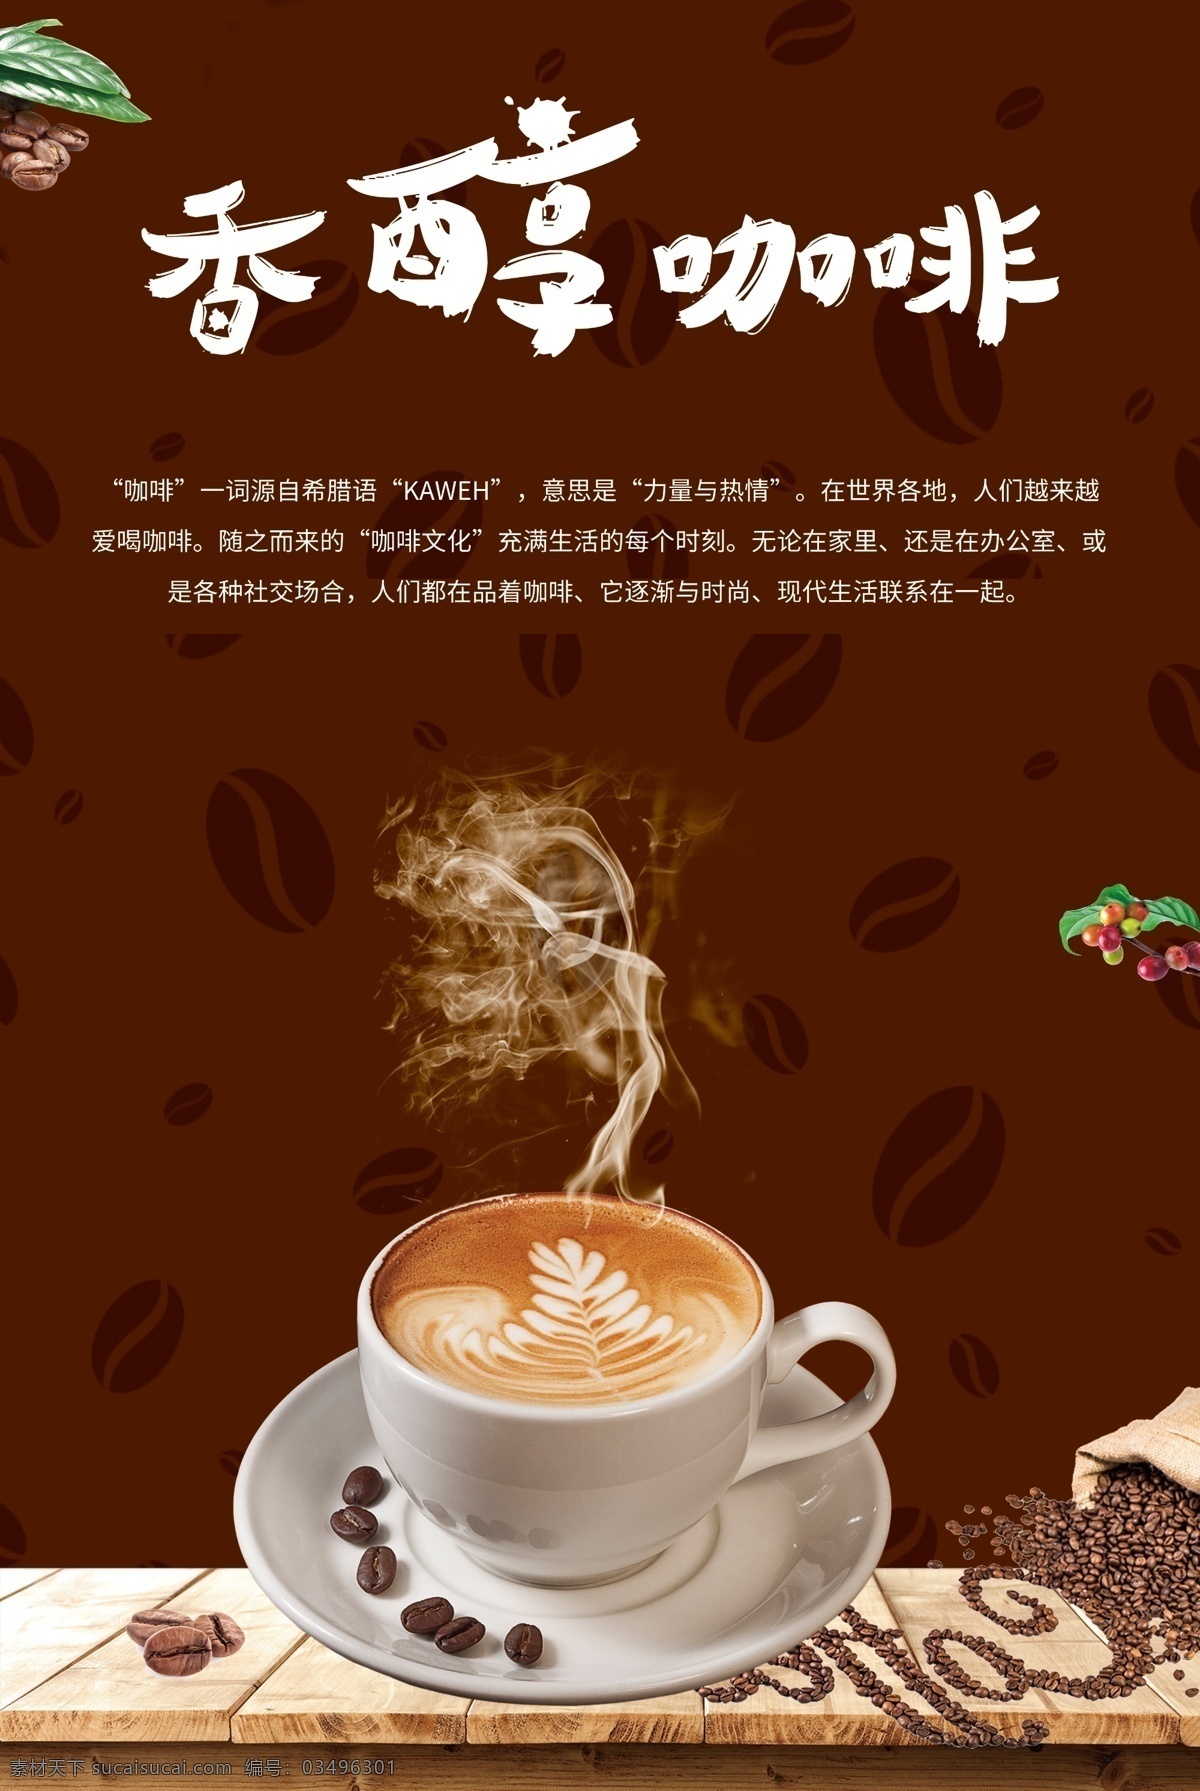 香醇 咖啡 促销 海报 海报素材